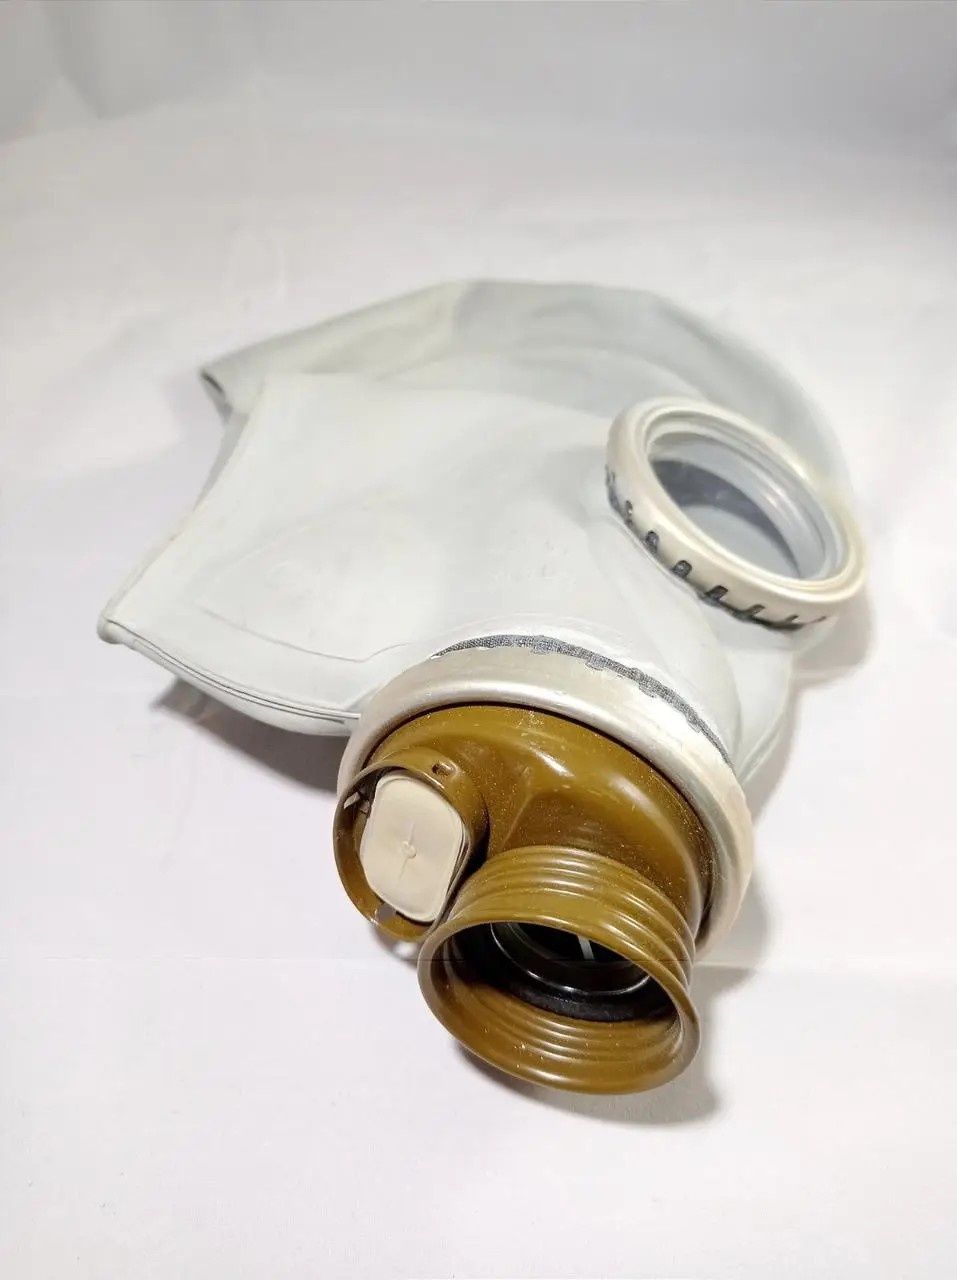 Противогаз ГП-5 противогазы разных размеров только маски (шлем)